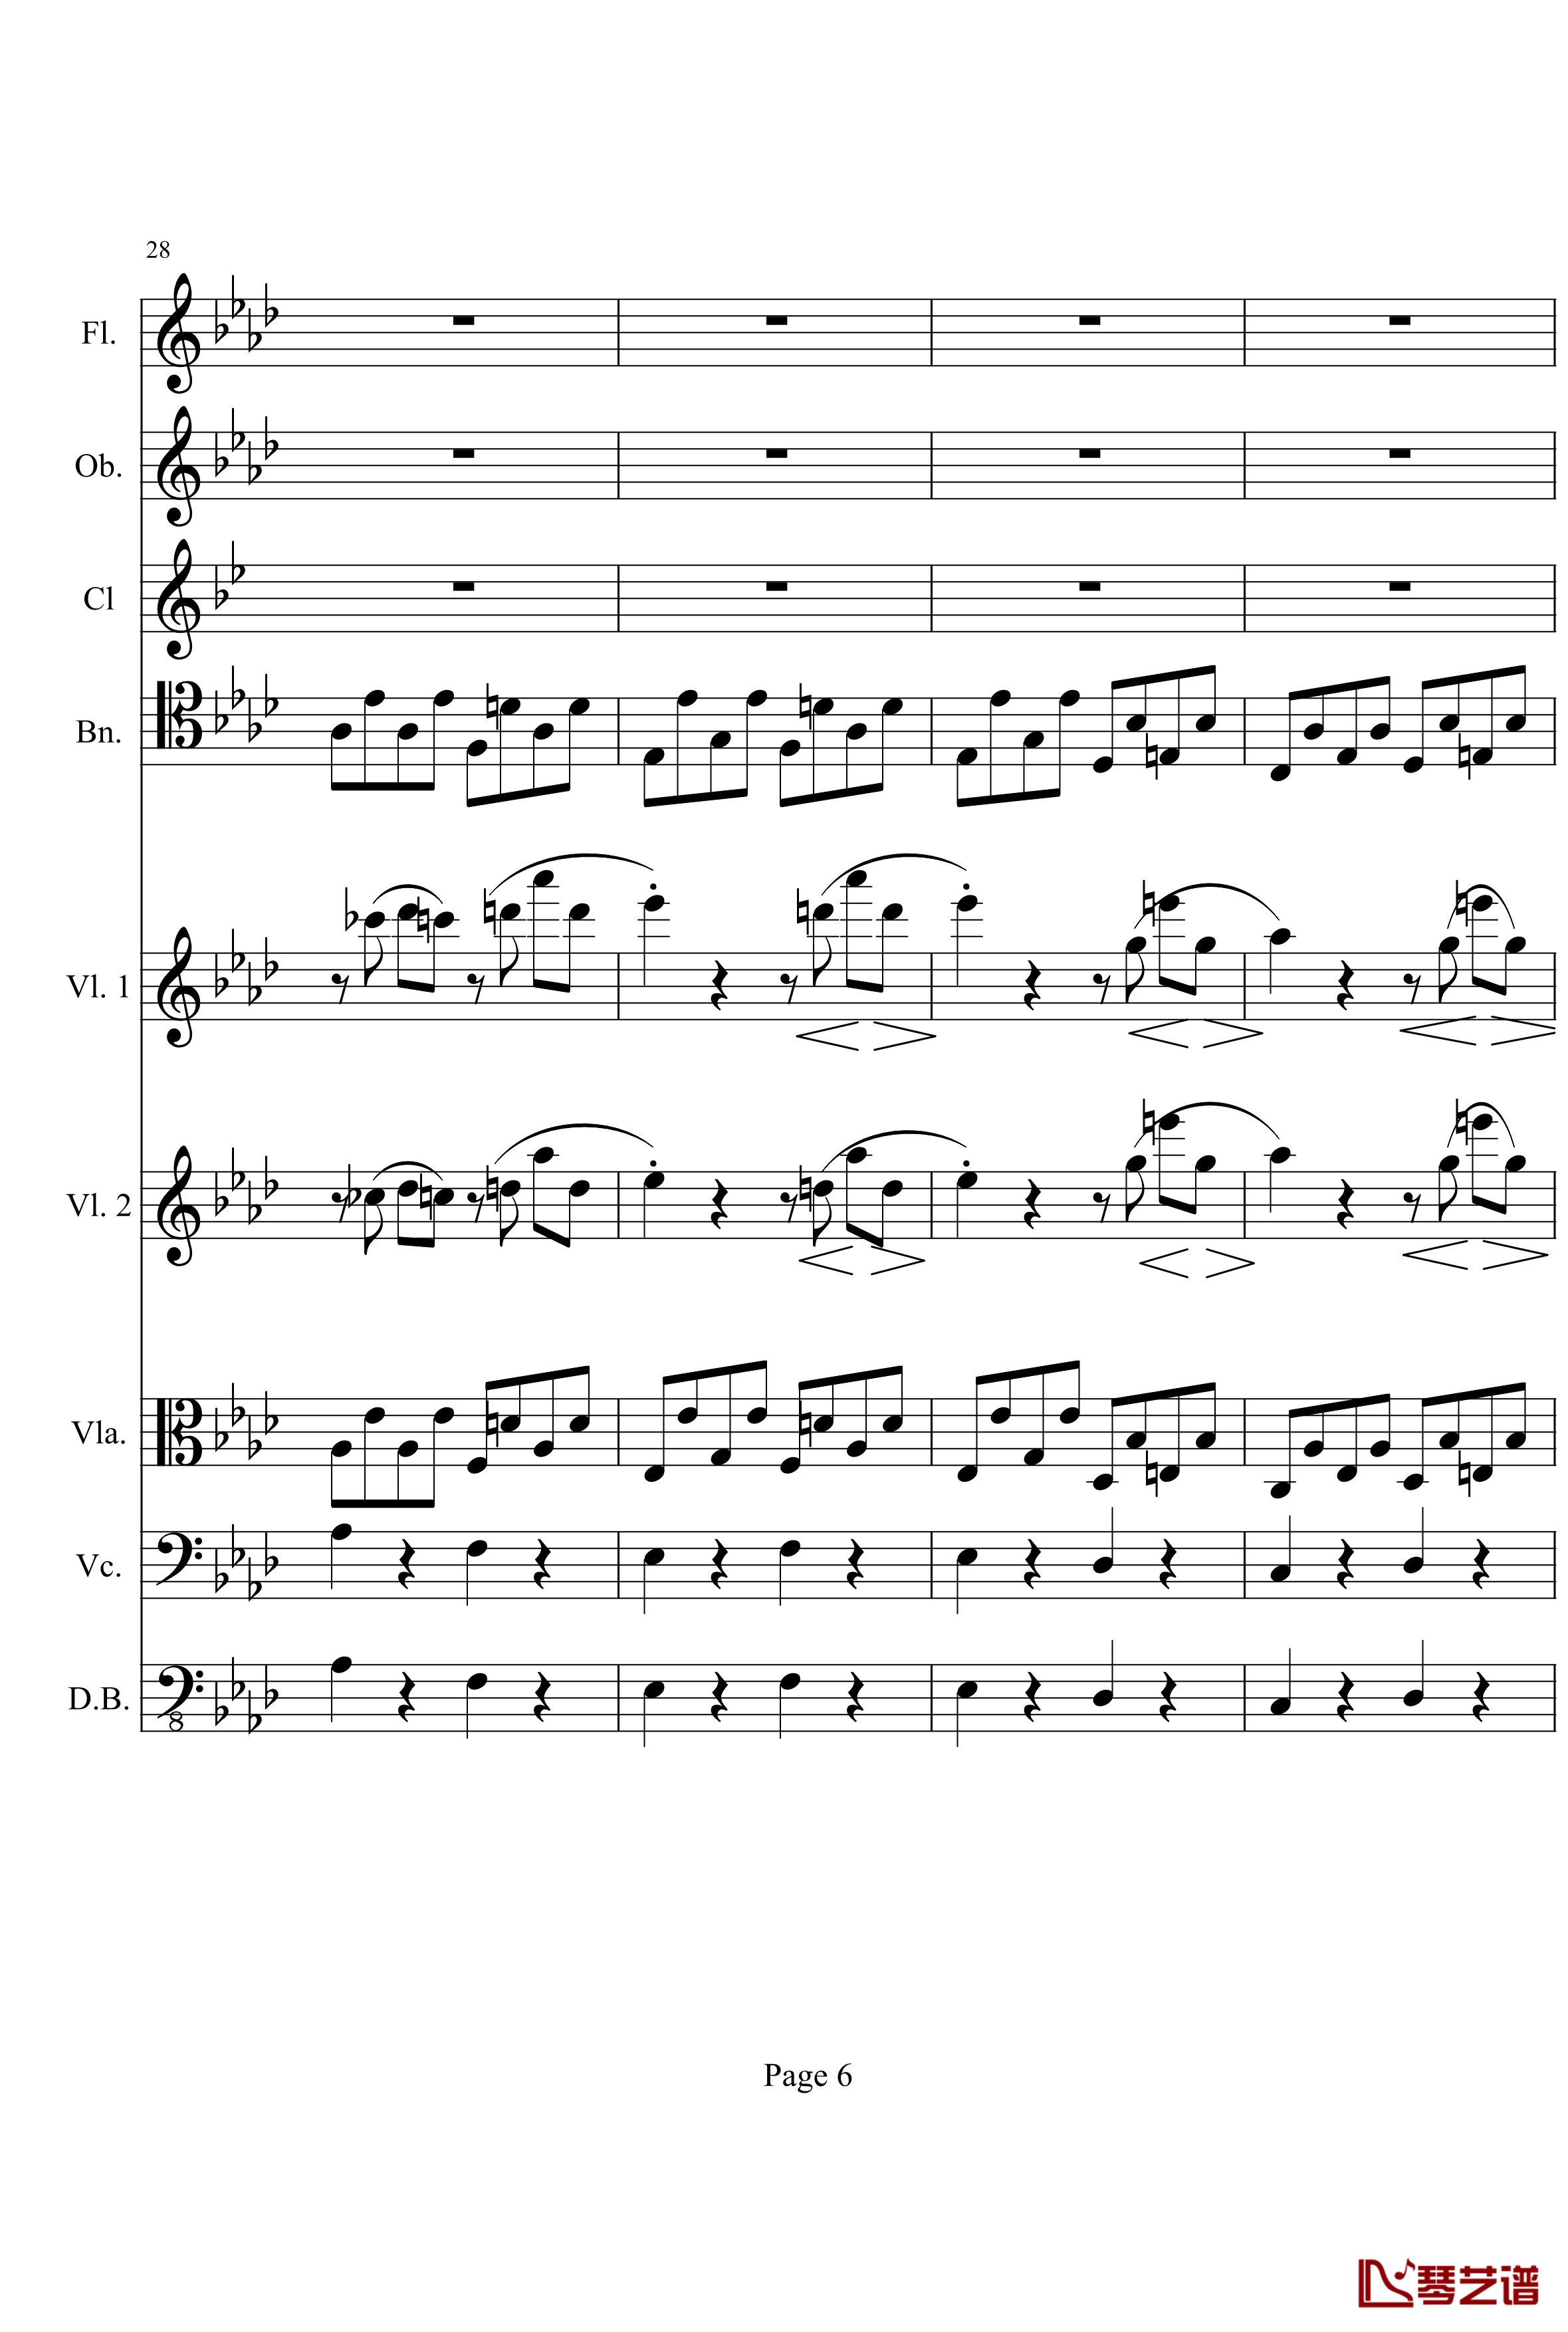 奏鸣曲之交响钢琴谱-第1首-Ⅰ-贝多芬-beethoven6